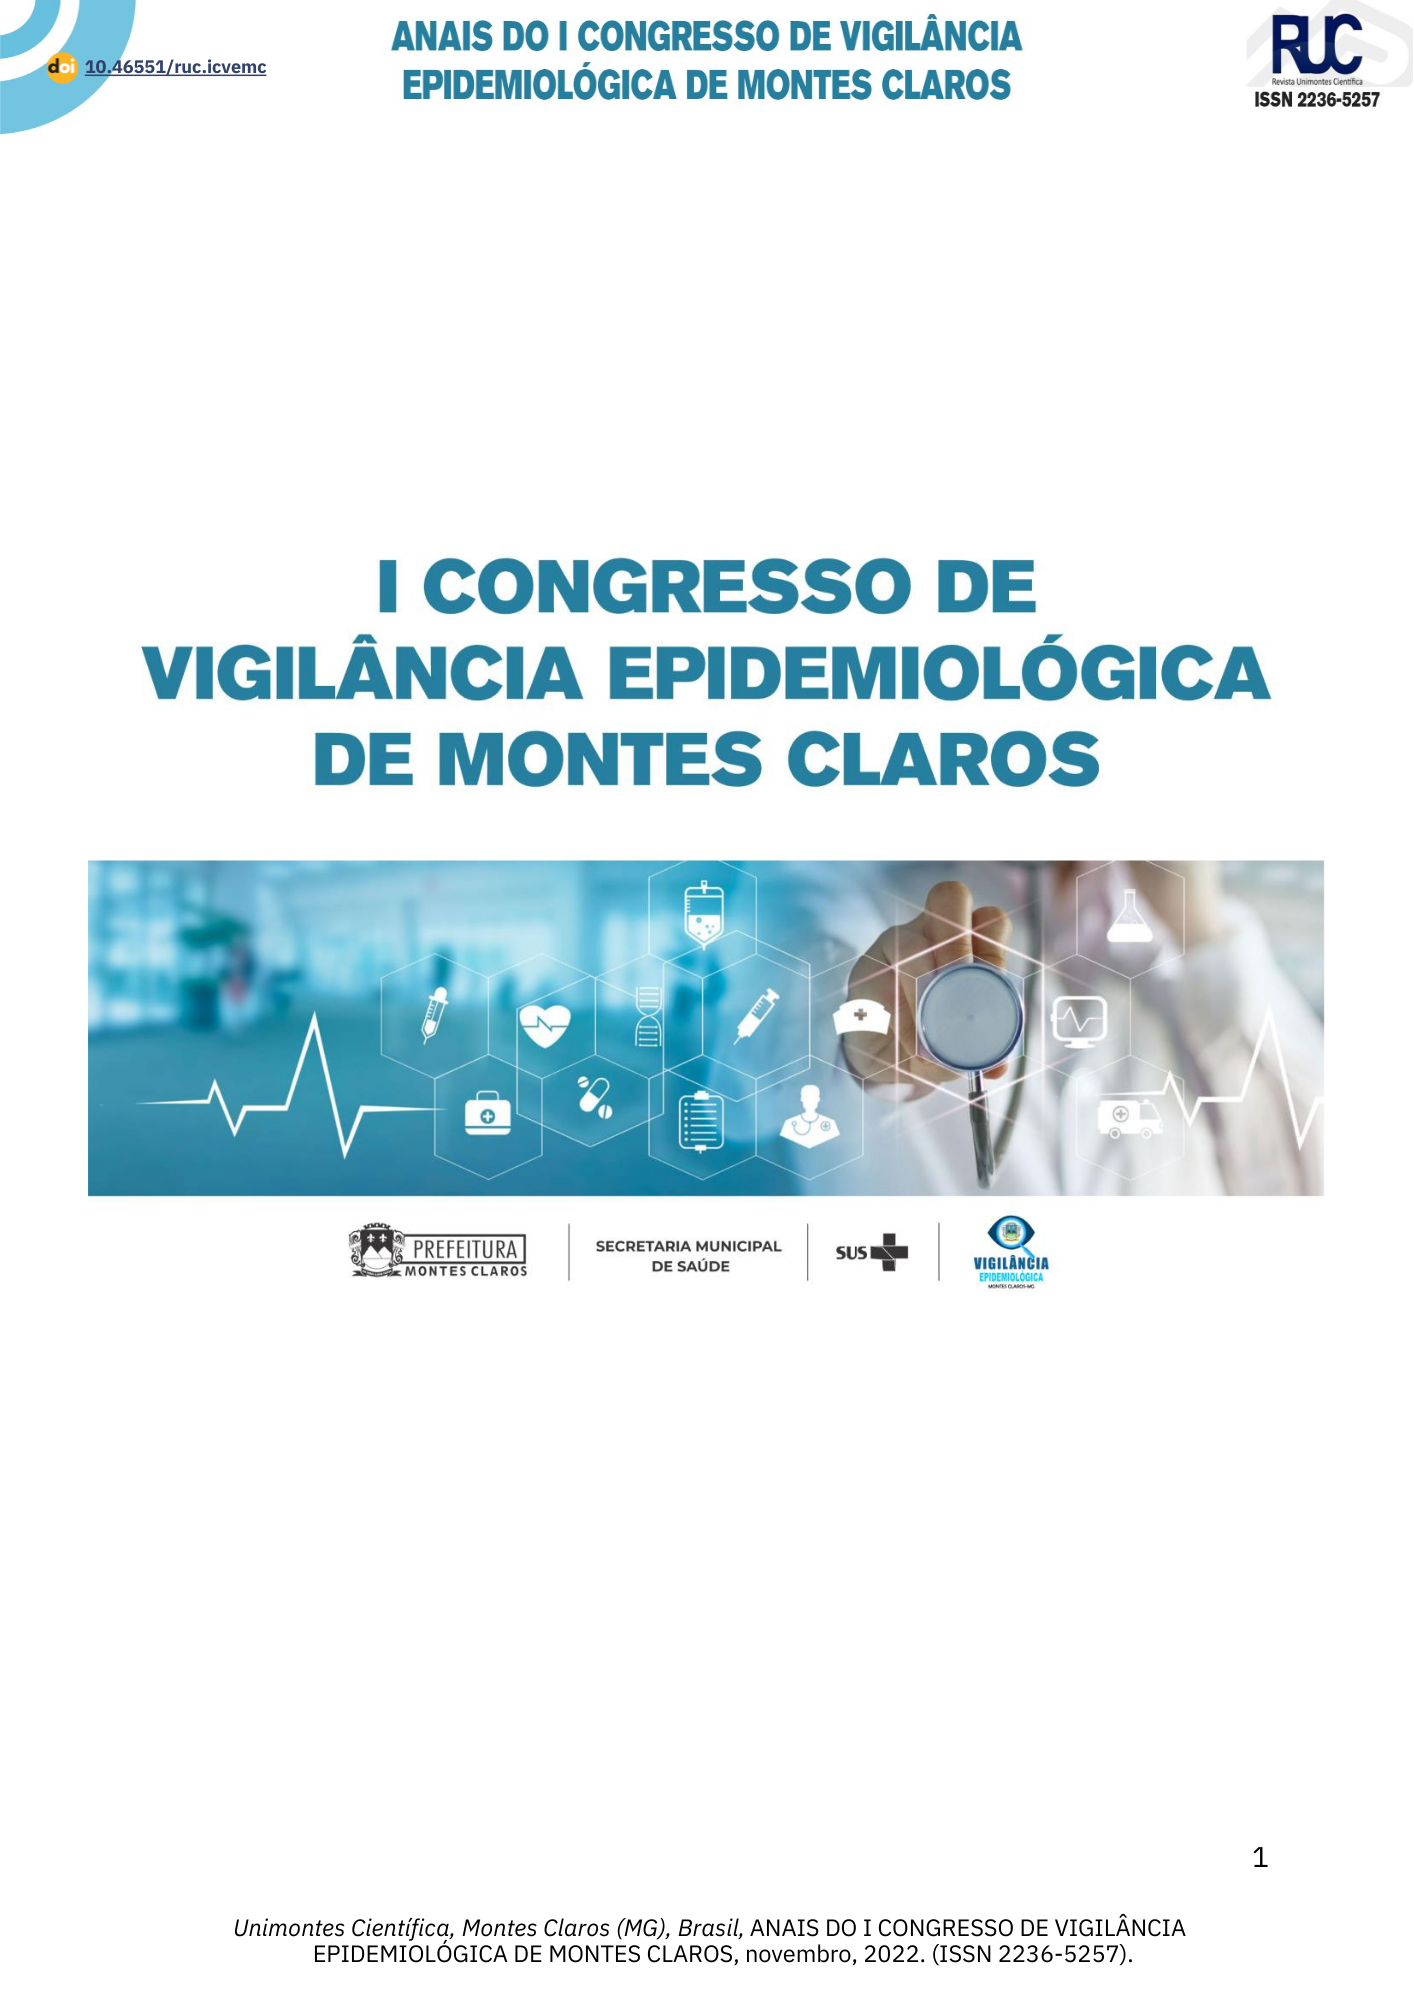 					Visualizar Anais do I Congresso de Vigilância Epidemiológica de Montes Claros - Minas Gerais
				